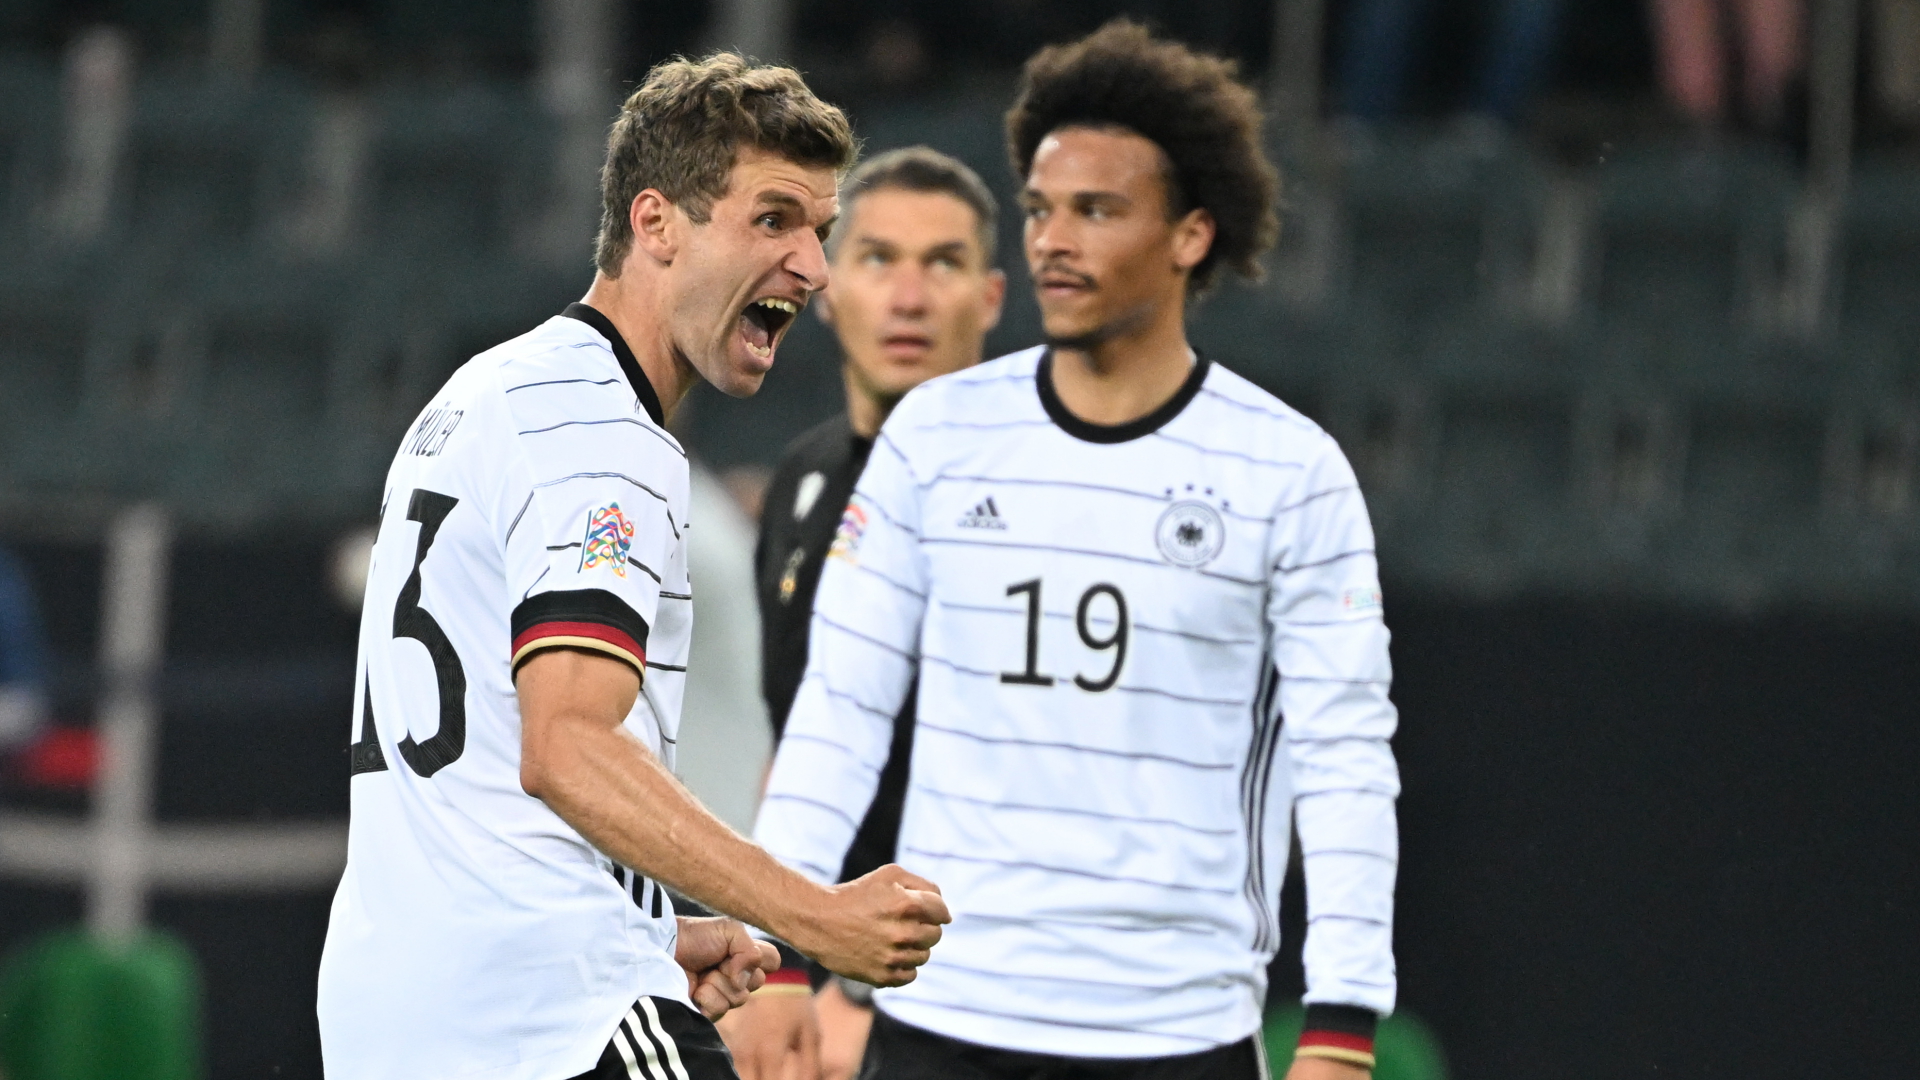 Deutschlands Nationalspieler Thomas Müller (links) jubelt neben Leroy Sane über seinen Treffer im Nations-League-Spiel gegen Italien. | dpa